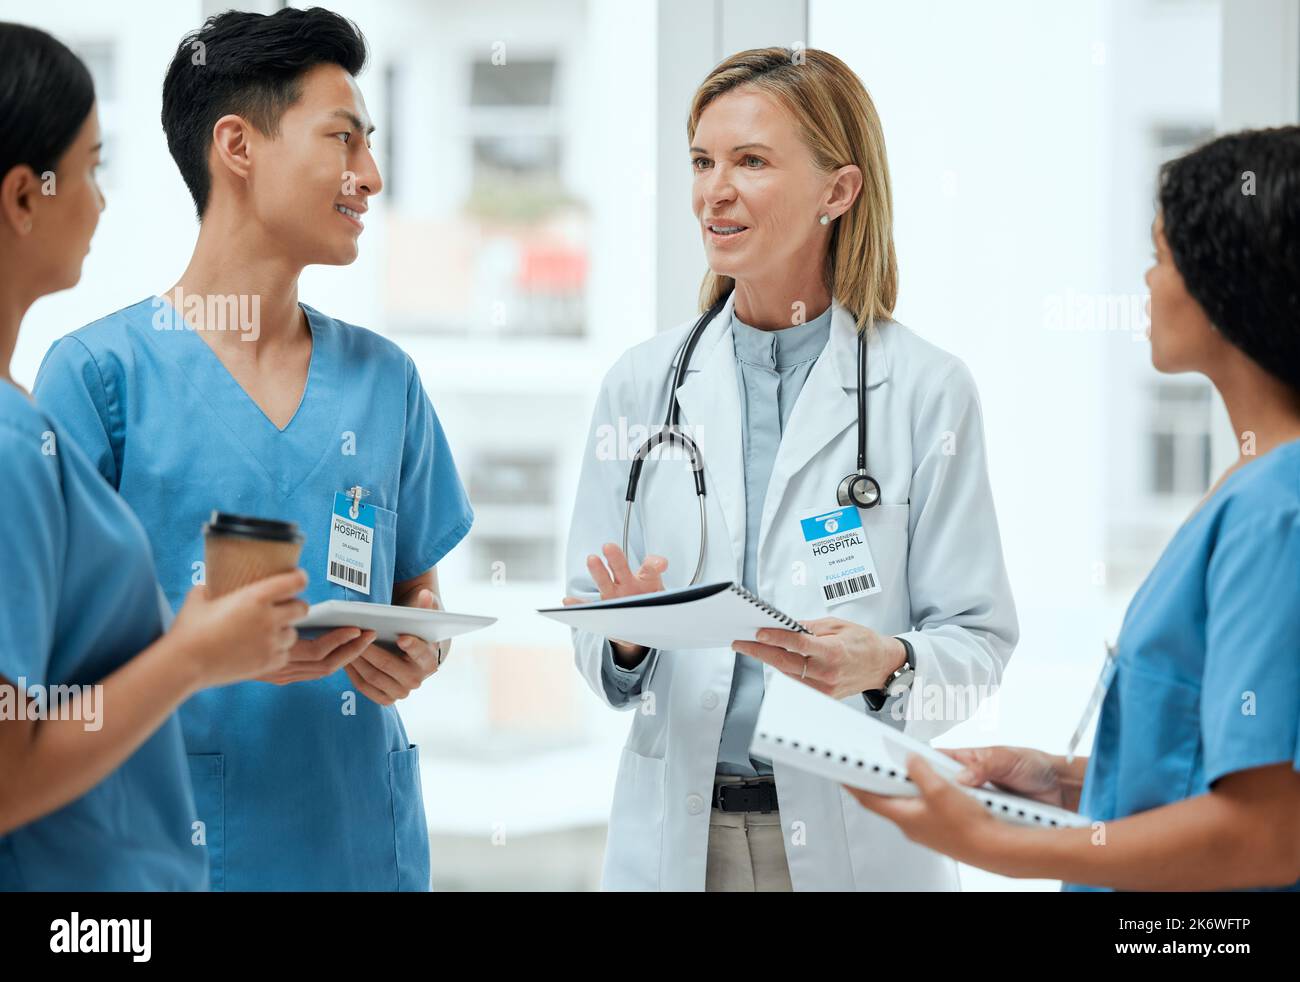 Wenden Sie sich immer an Ihre Kollegen, wenn Sie unsicher sind. Eine Gruppe von Ärzten, die in einem Krankenhaus eine Diskussion führen. Stockfoto